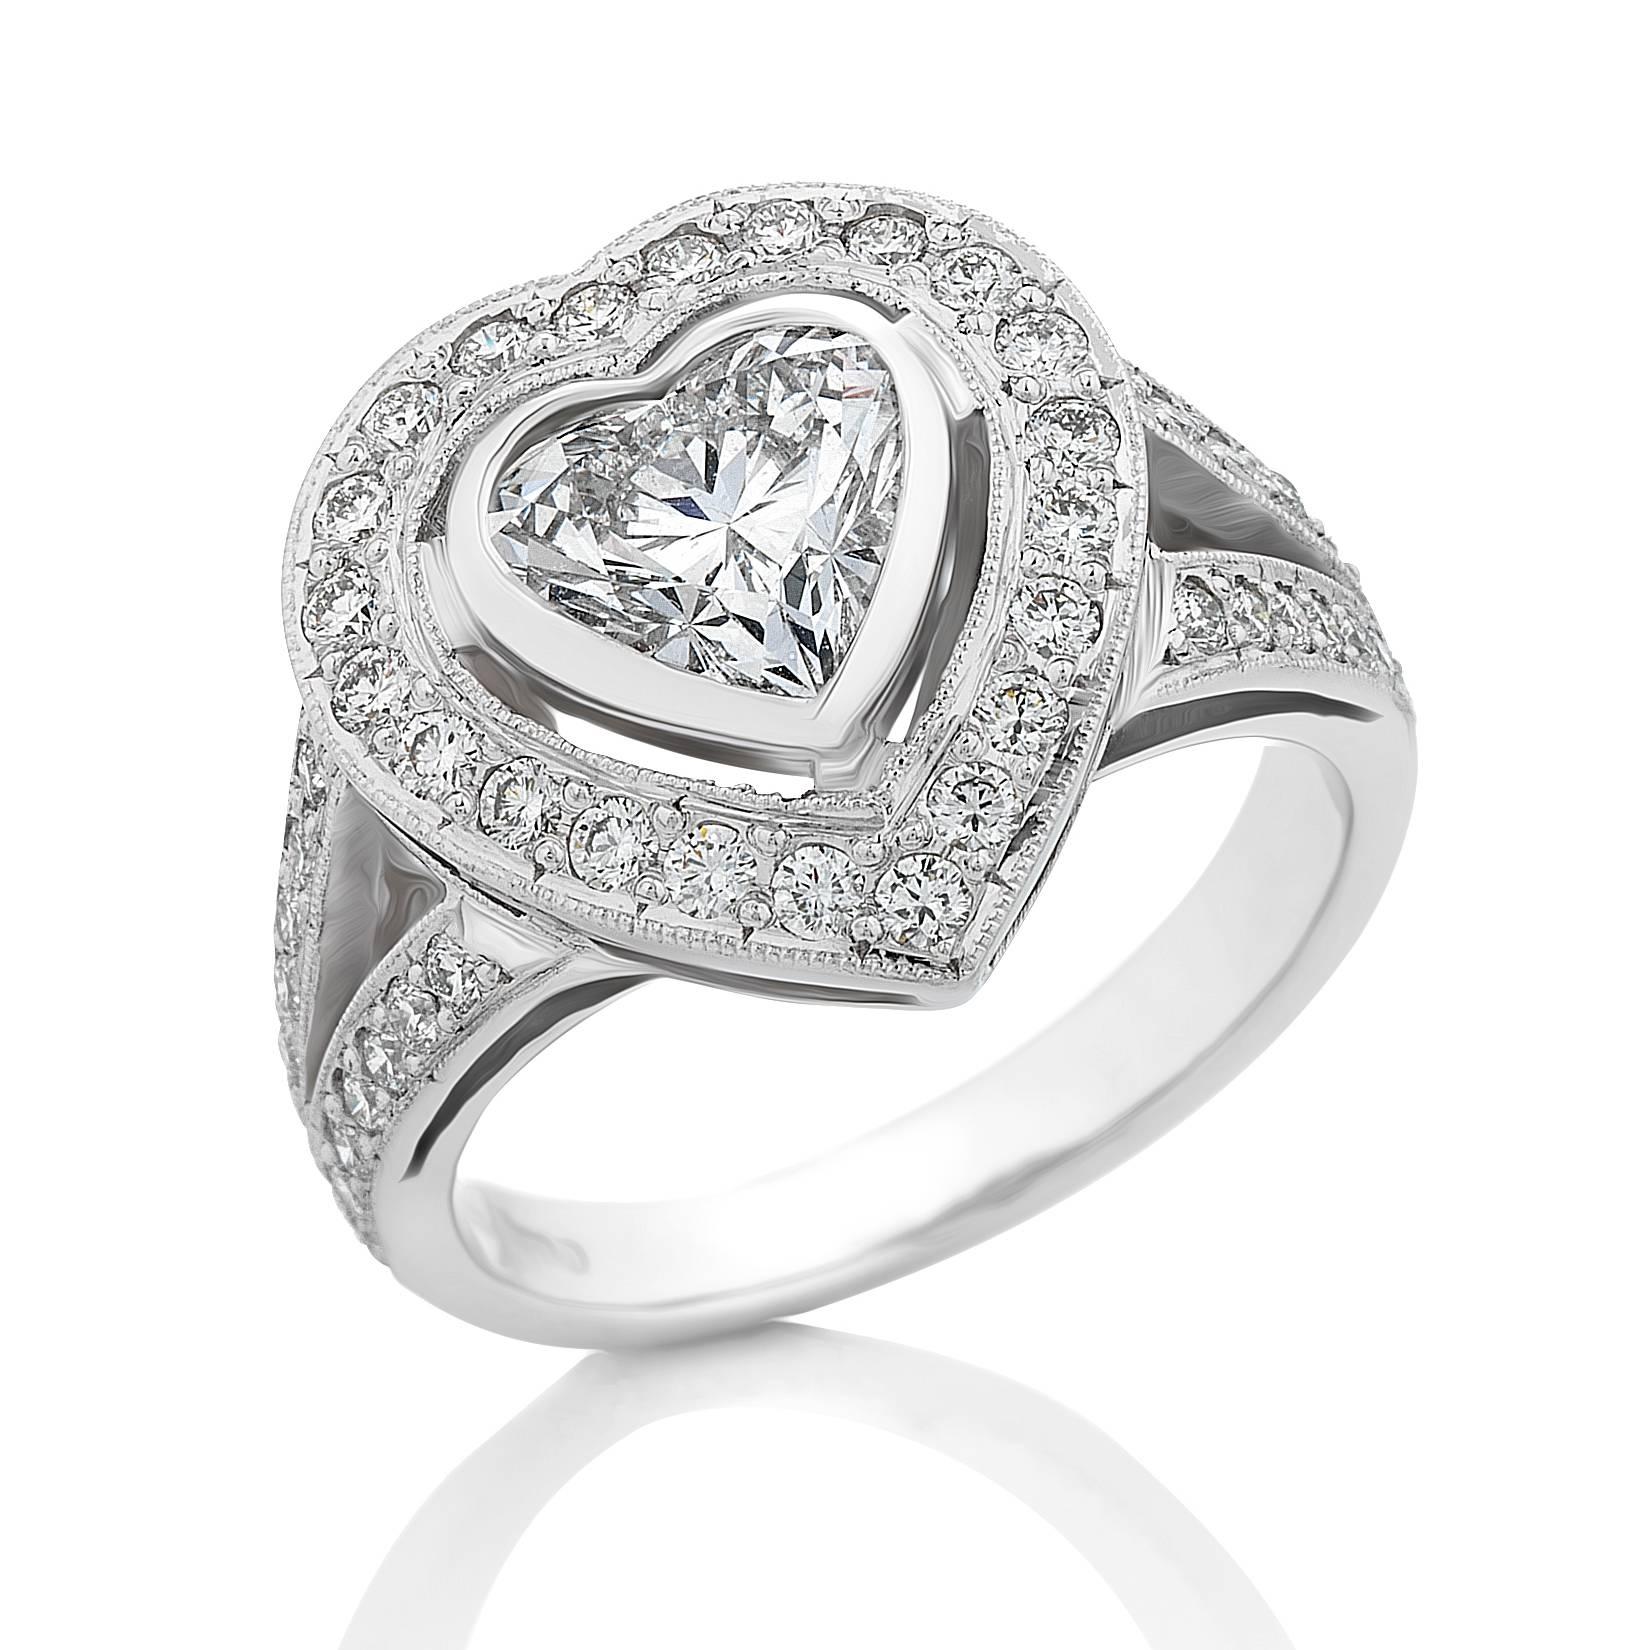 Women's GIA Certified 1.41 Carat Heart Shaped Diamond Halo Ring